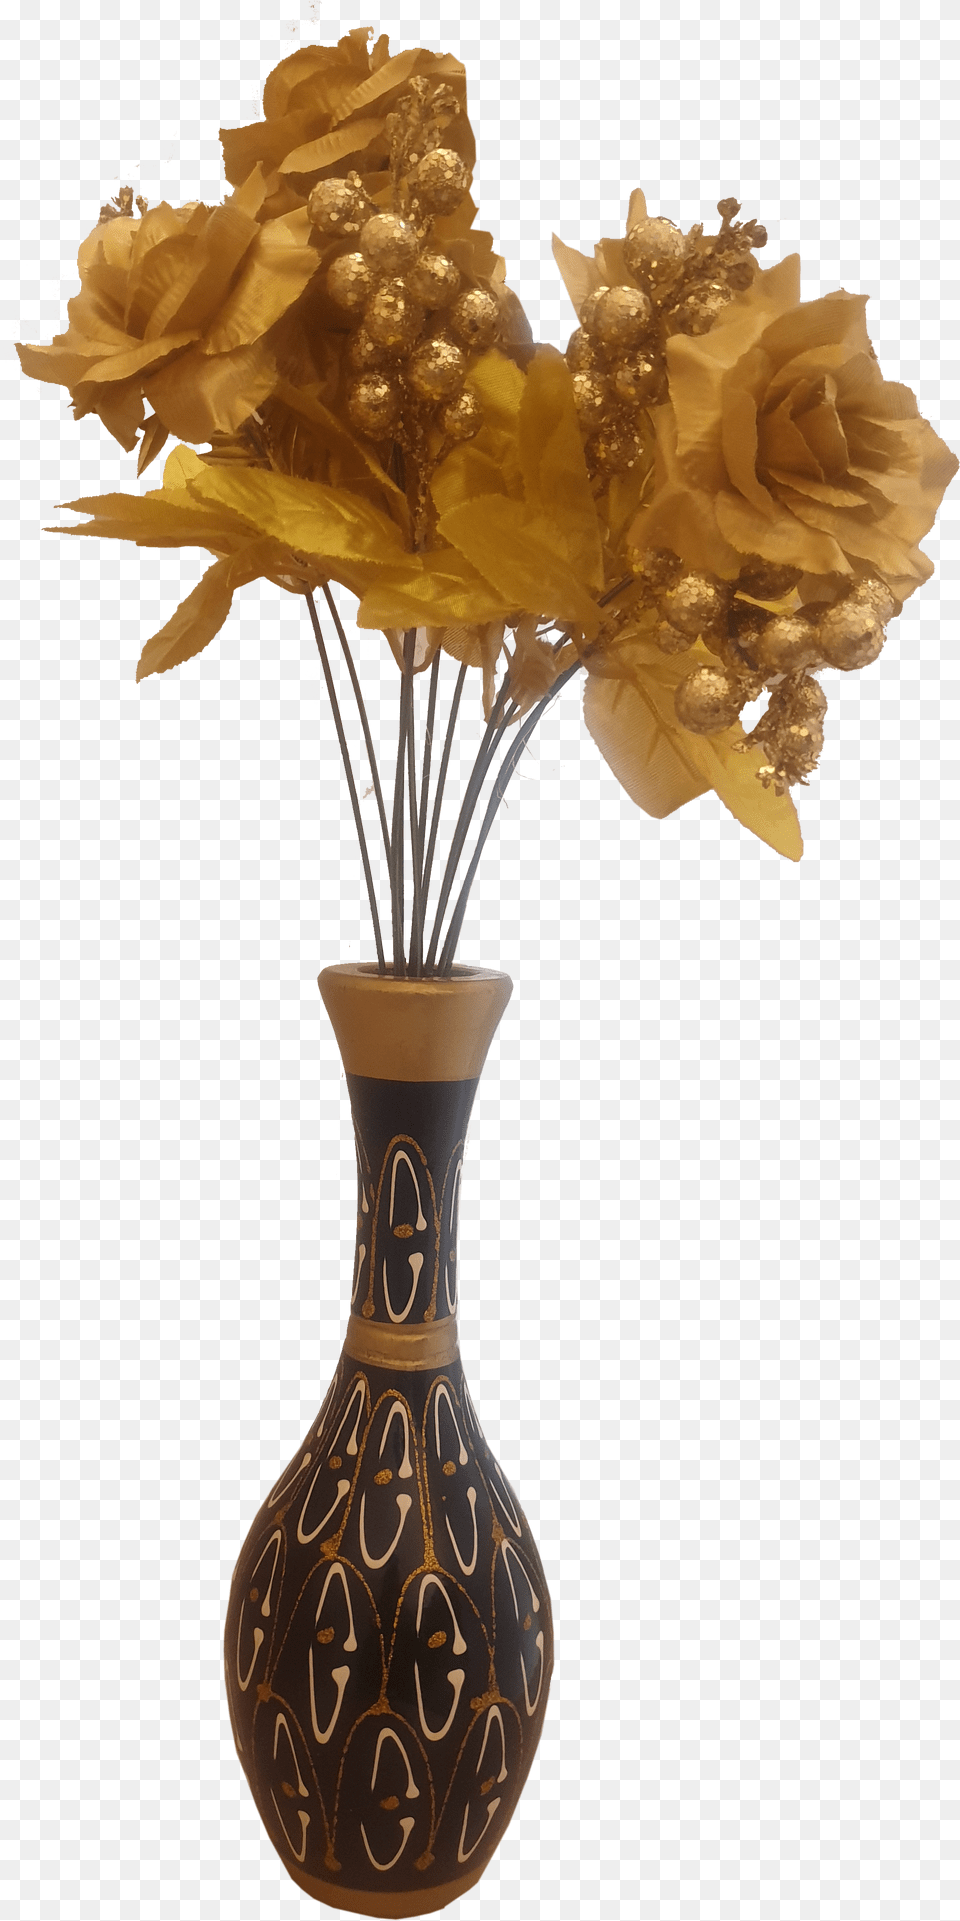 Wooden Flower Vase Free Png